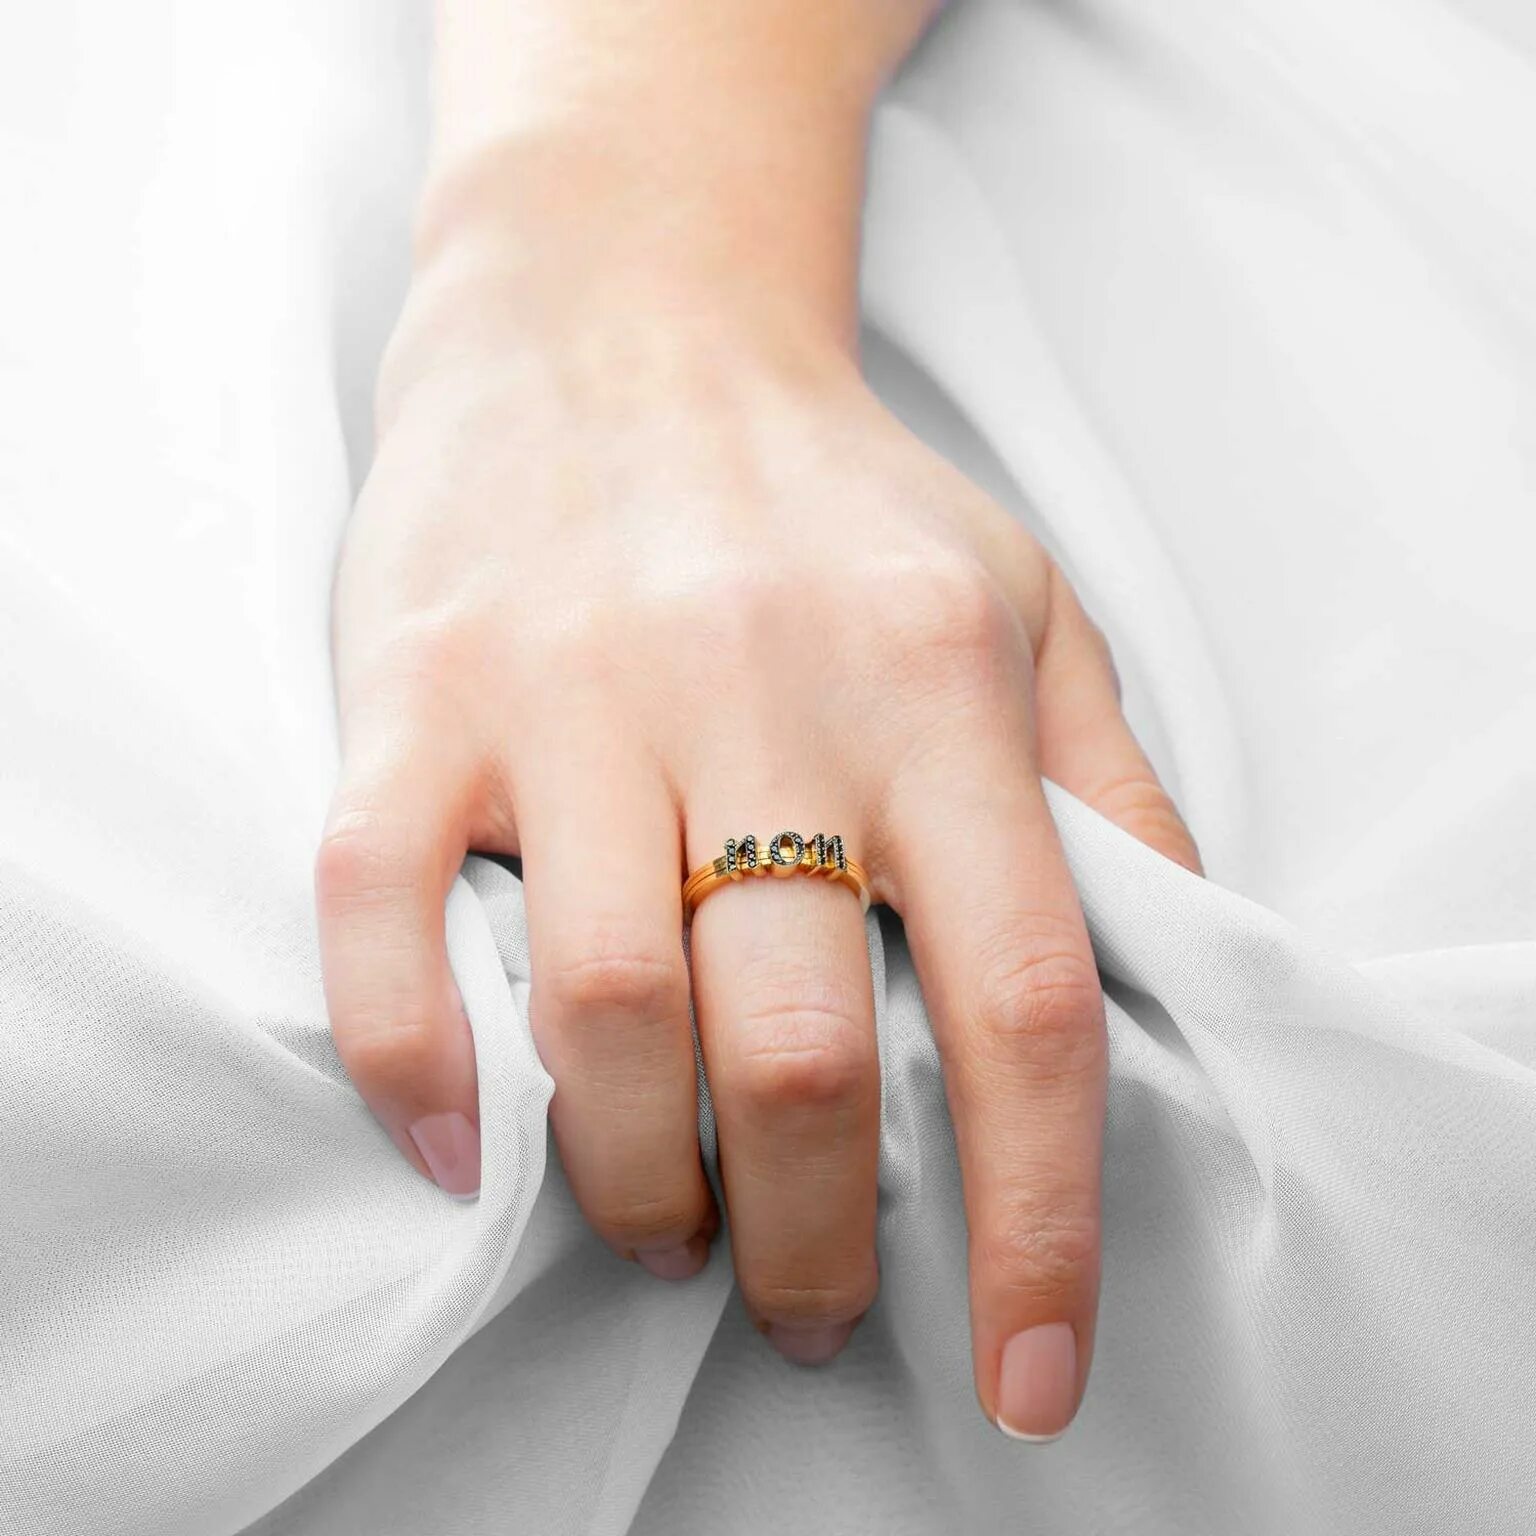 Кольцо когда замужем. Обручальное кольцо на пальце. Свадебные кольца на пальцах. Кольцо для замужества. Обручальные кольца на руках.